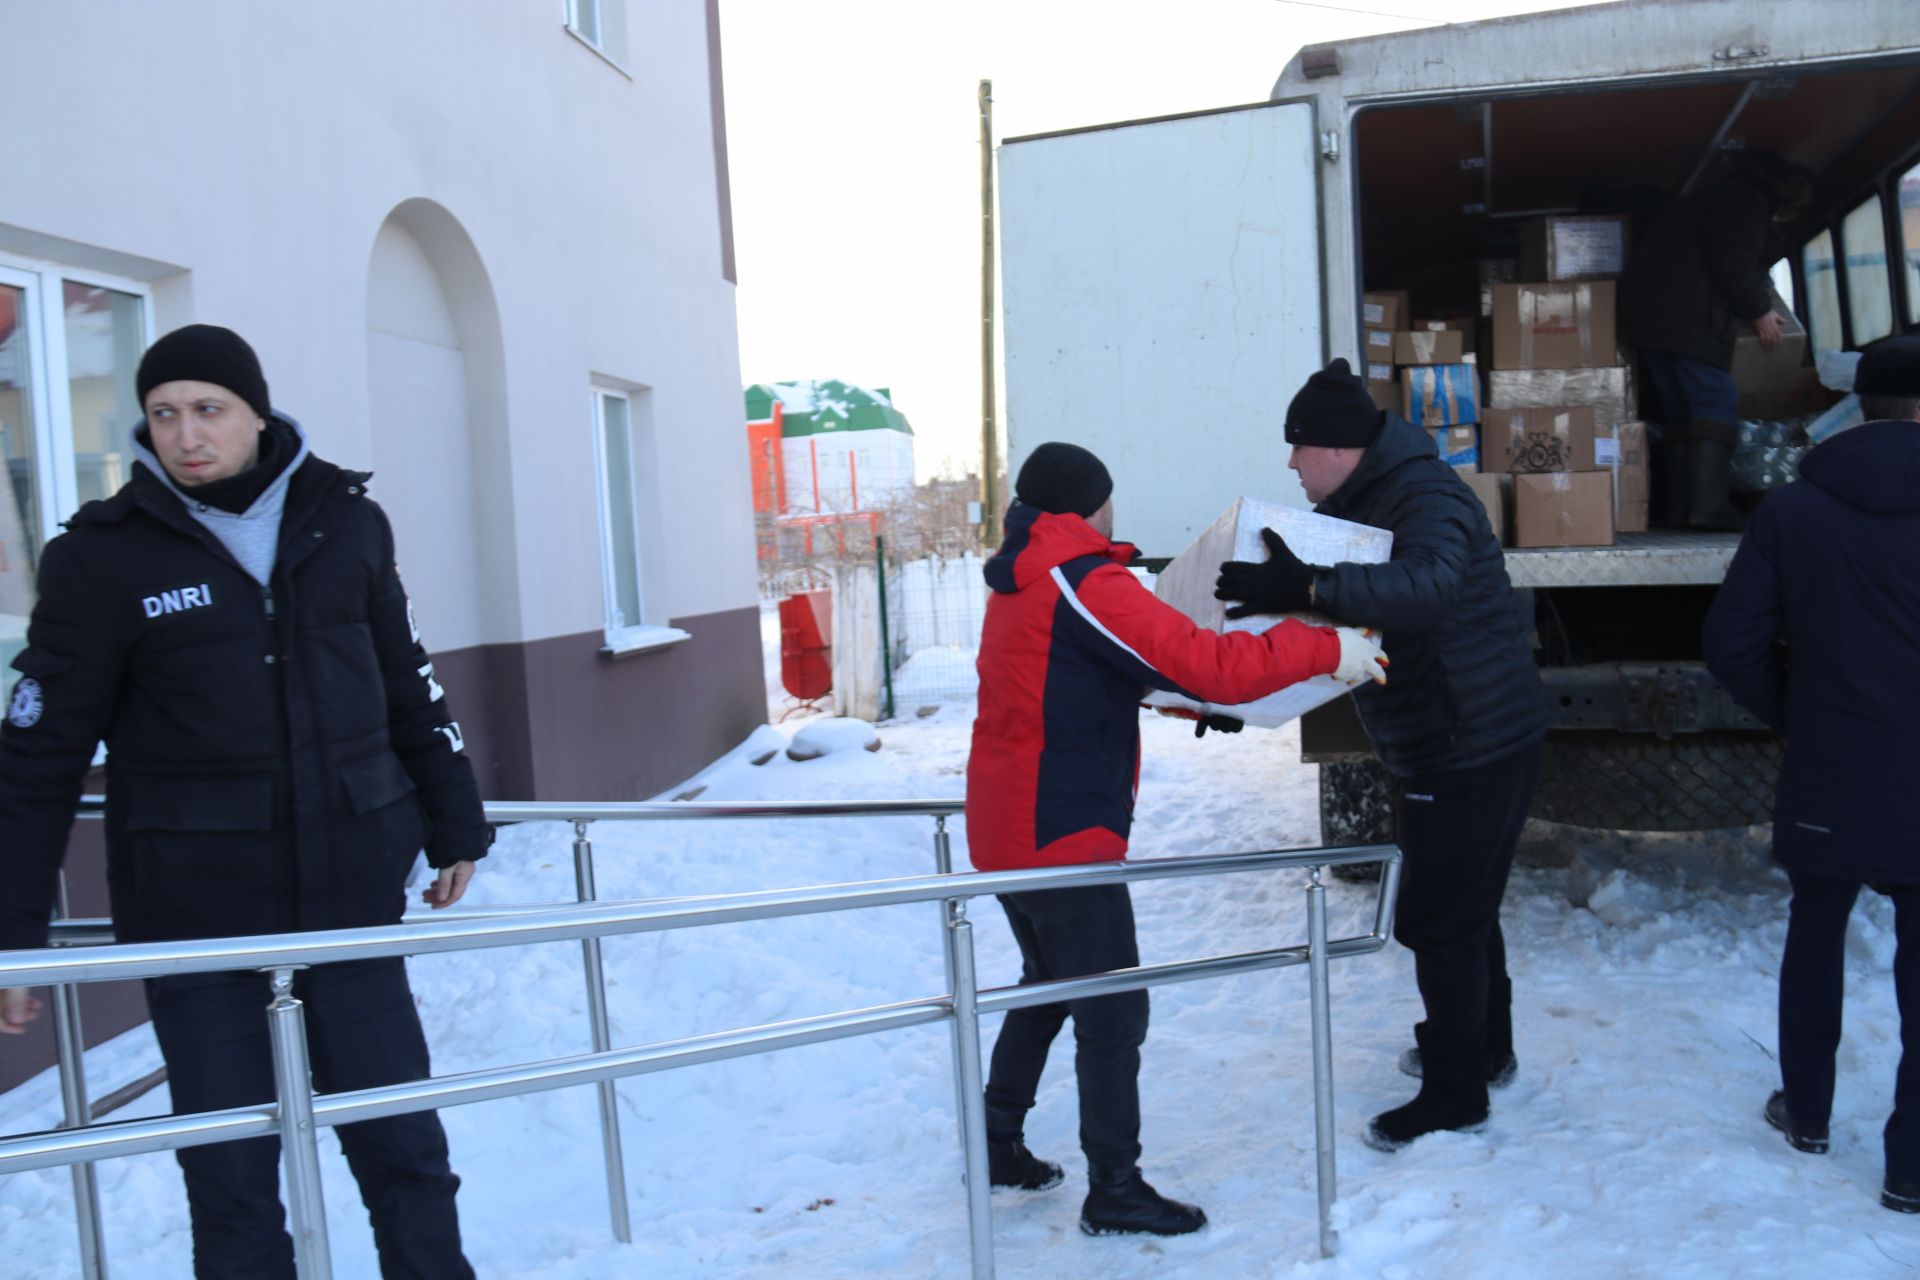 Гуманитарная помощь от Ютазинского района  отправилась в зону СВО